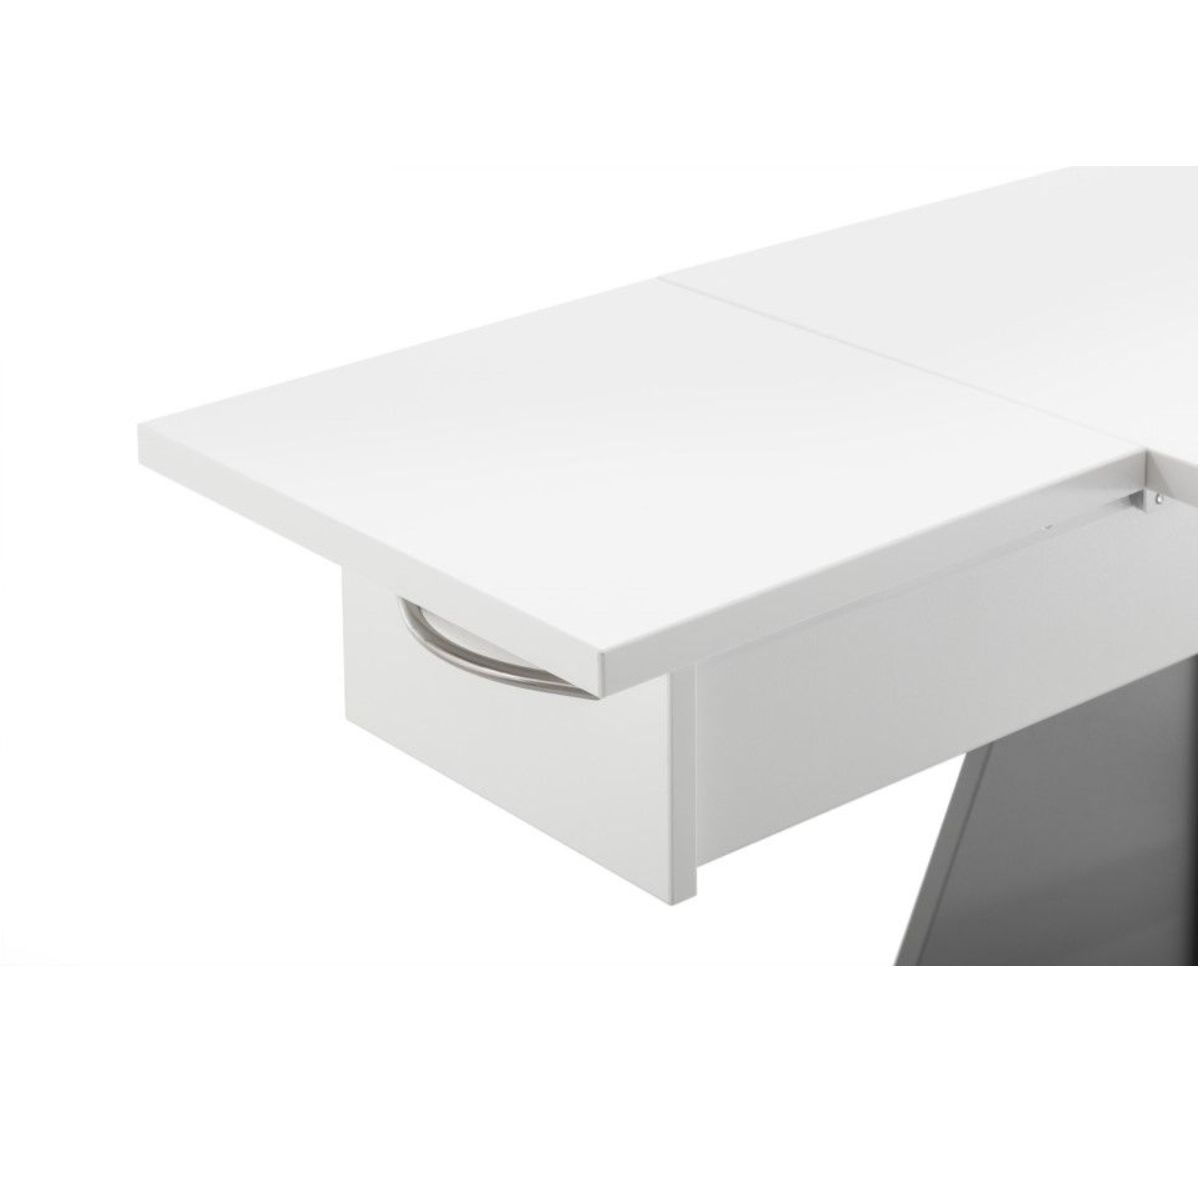 Quiltplatte für Möbel Multi smart